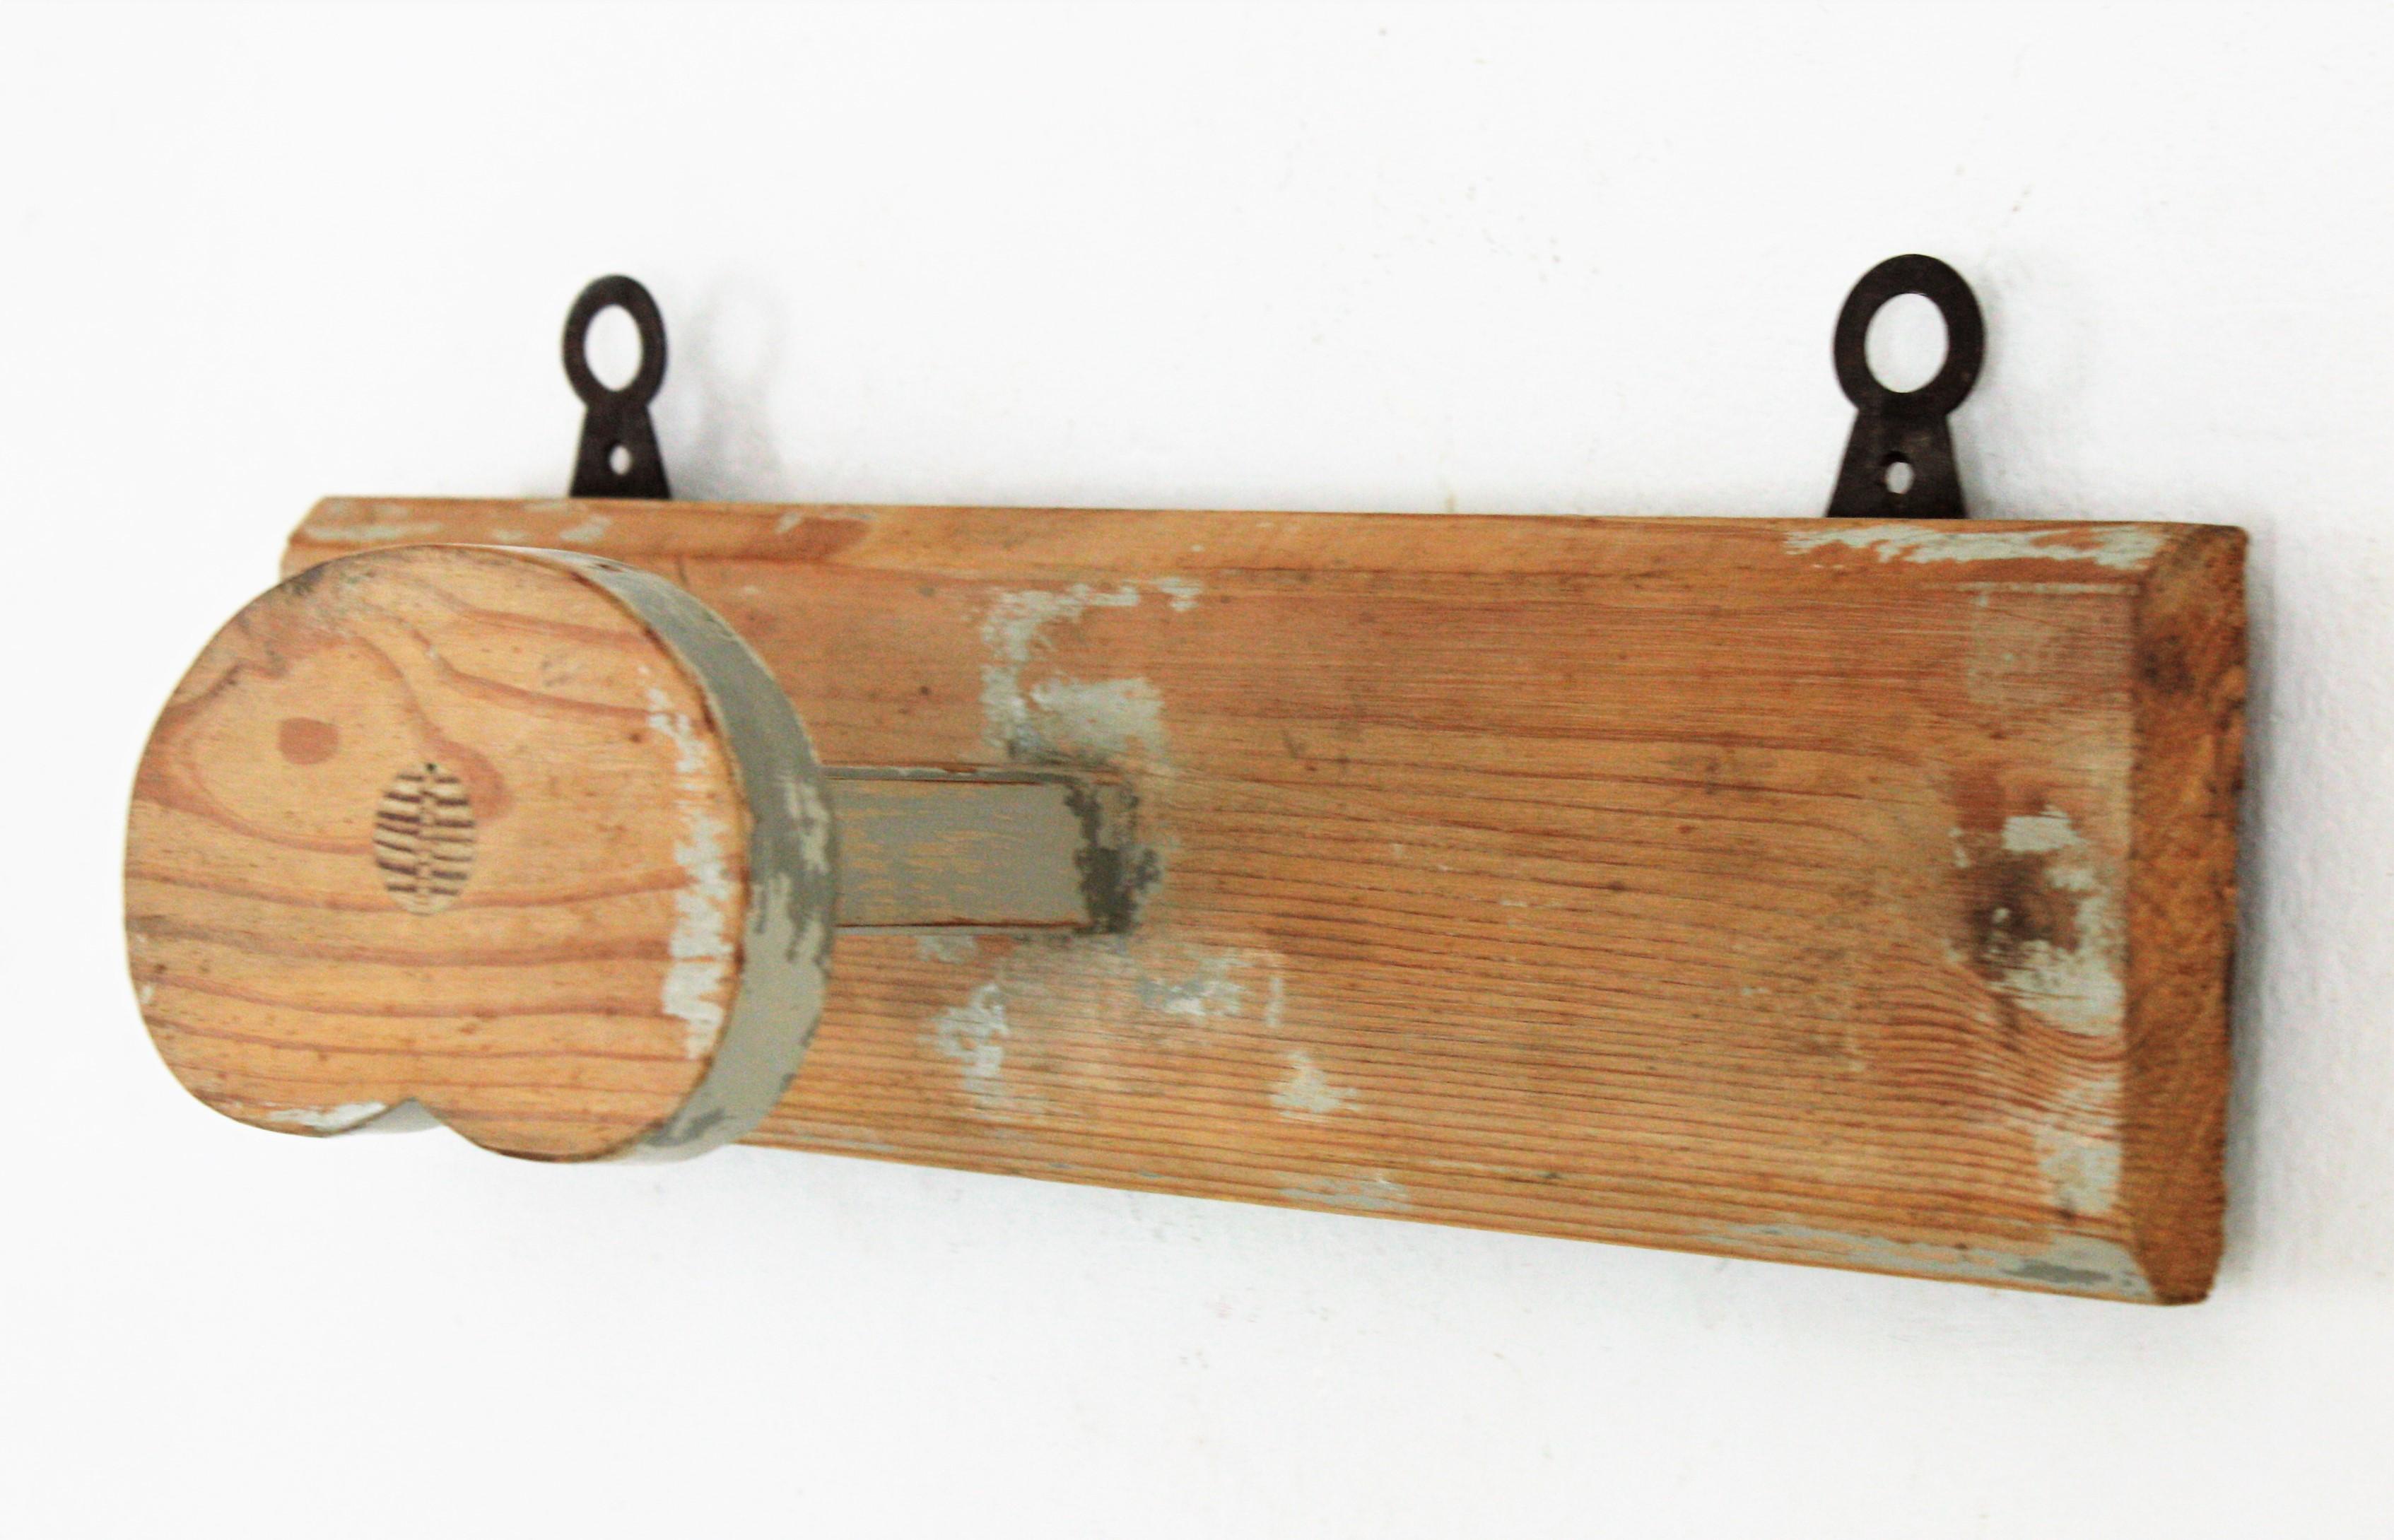 Schöner rustikaler Wandaufhänger aus Holz mit grau patinierten Akzenten, Spanien, 1930er Jahre.
Dieser stilvolle Wandkleiderbügel stammt aus einem Bauernhaus an der katalanischen Costa Brava. Er ist aus Kiefernholz gefertigt und hat einen